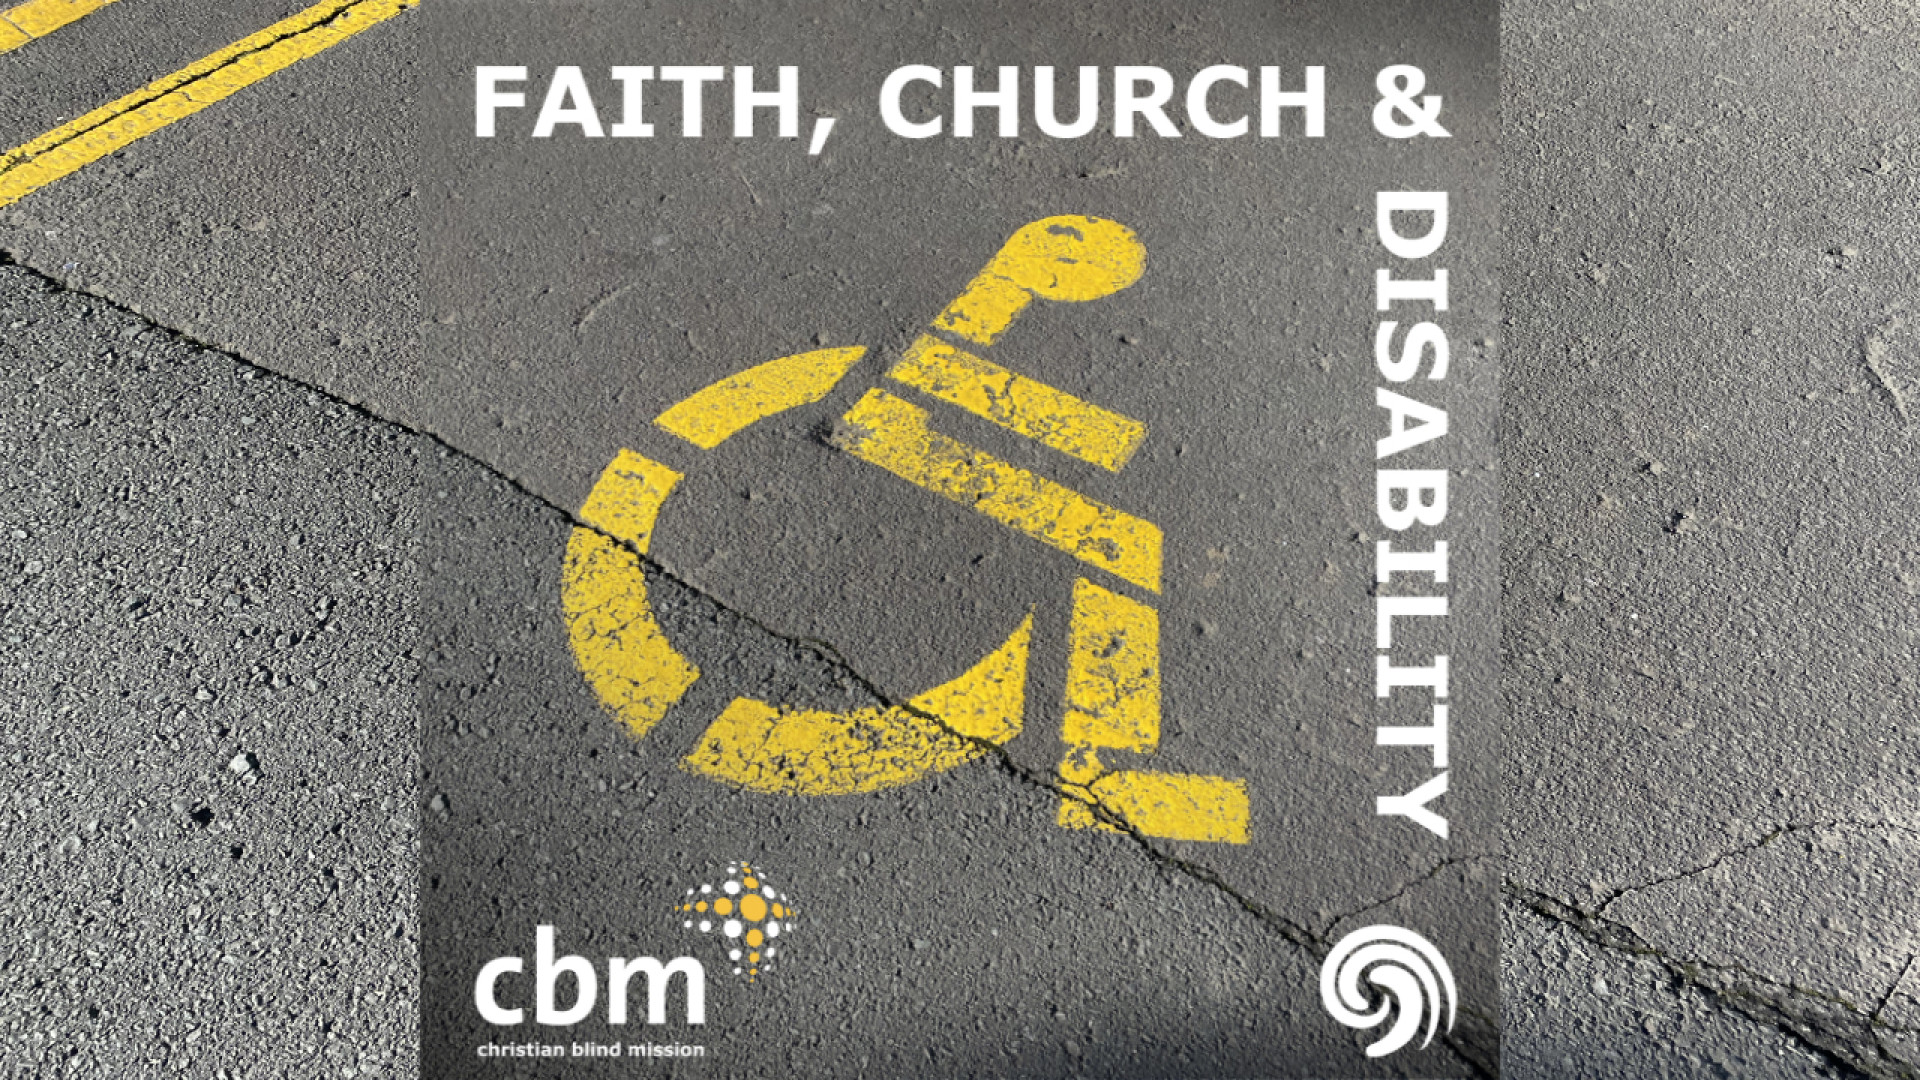 Faith, Church & Disability introduction Image